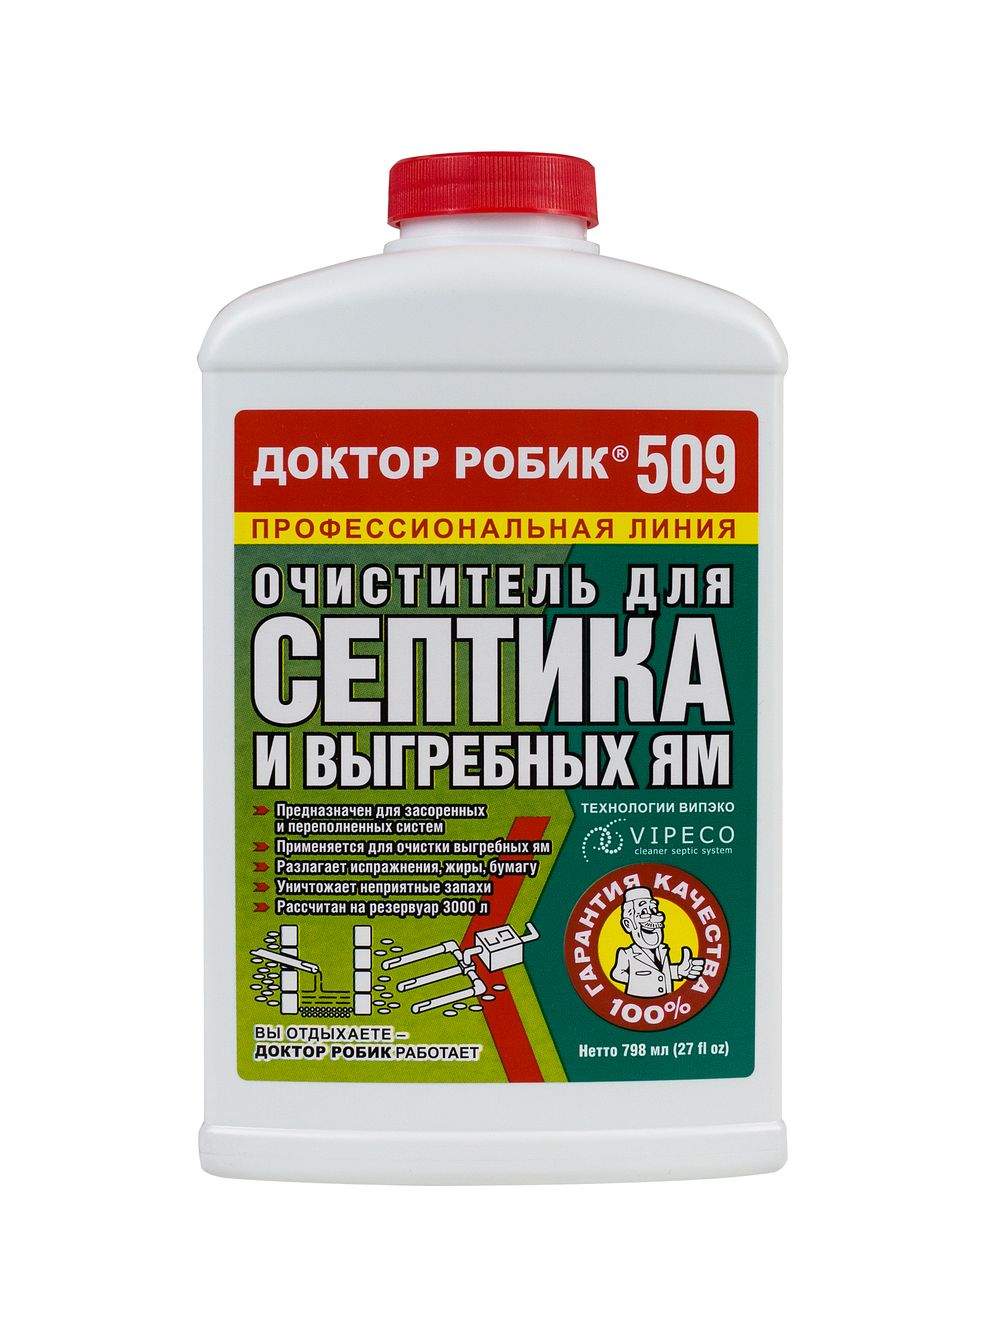 Очиститель для септика и выгребных ям Доктор Робик 509, 798 мл - купить в Мегамаркет Москва Пушкино, цена на Мегамаркет